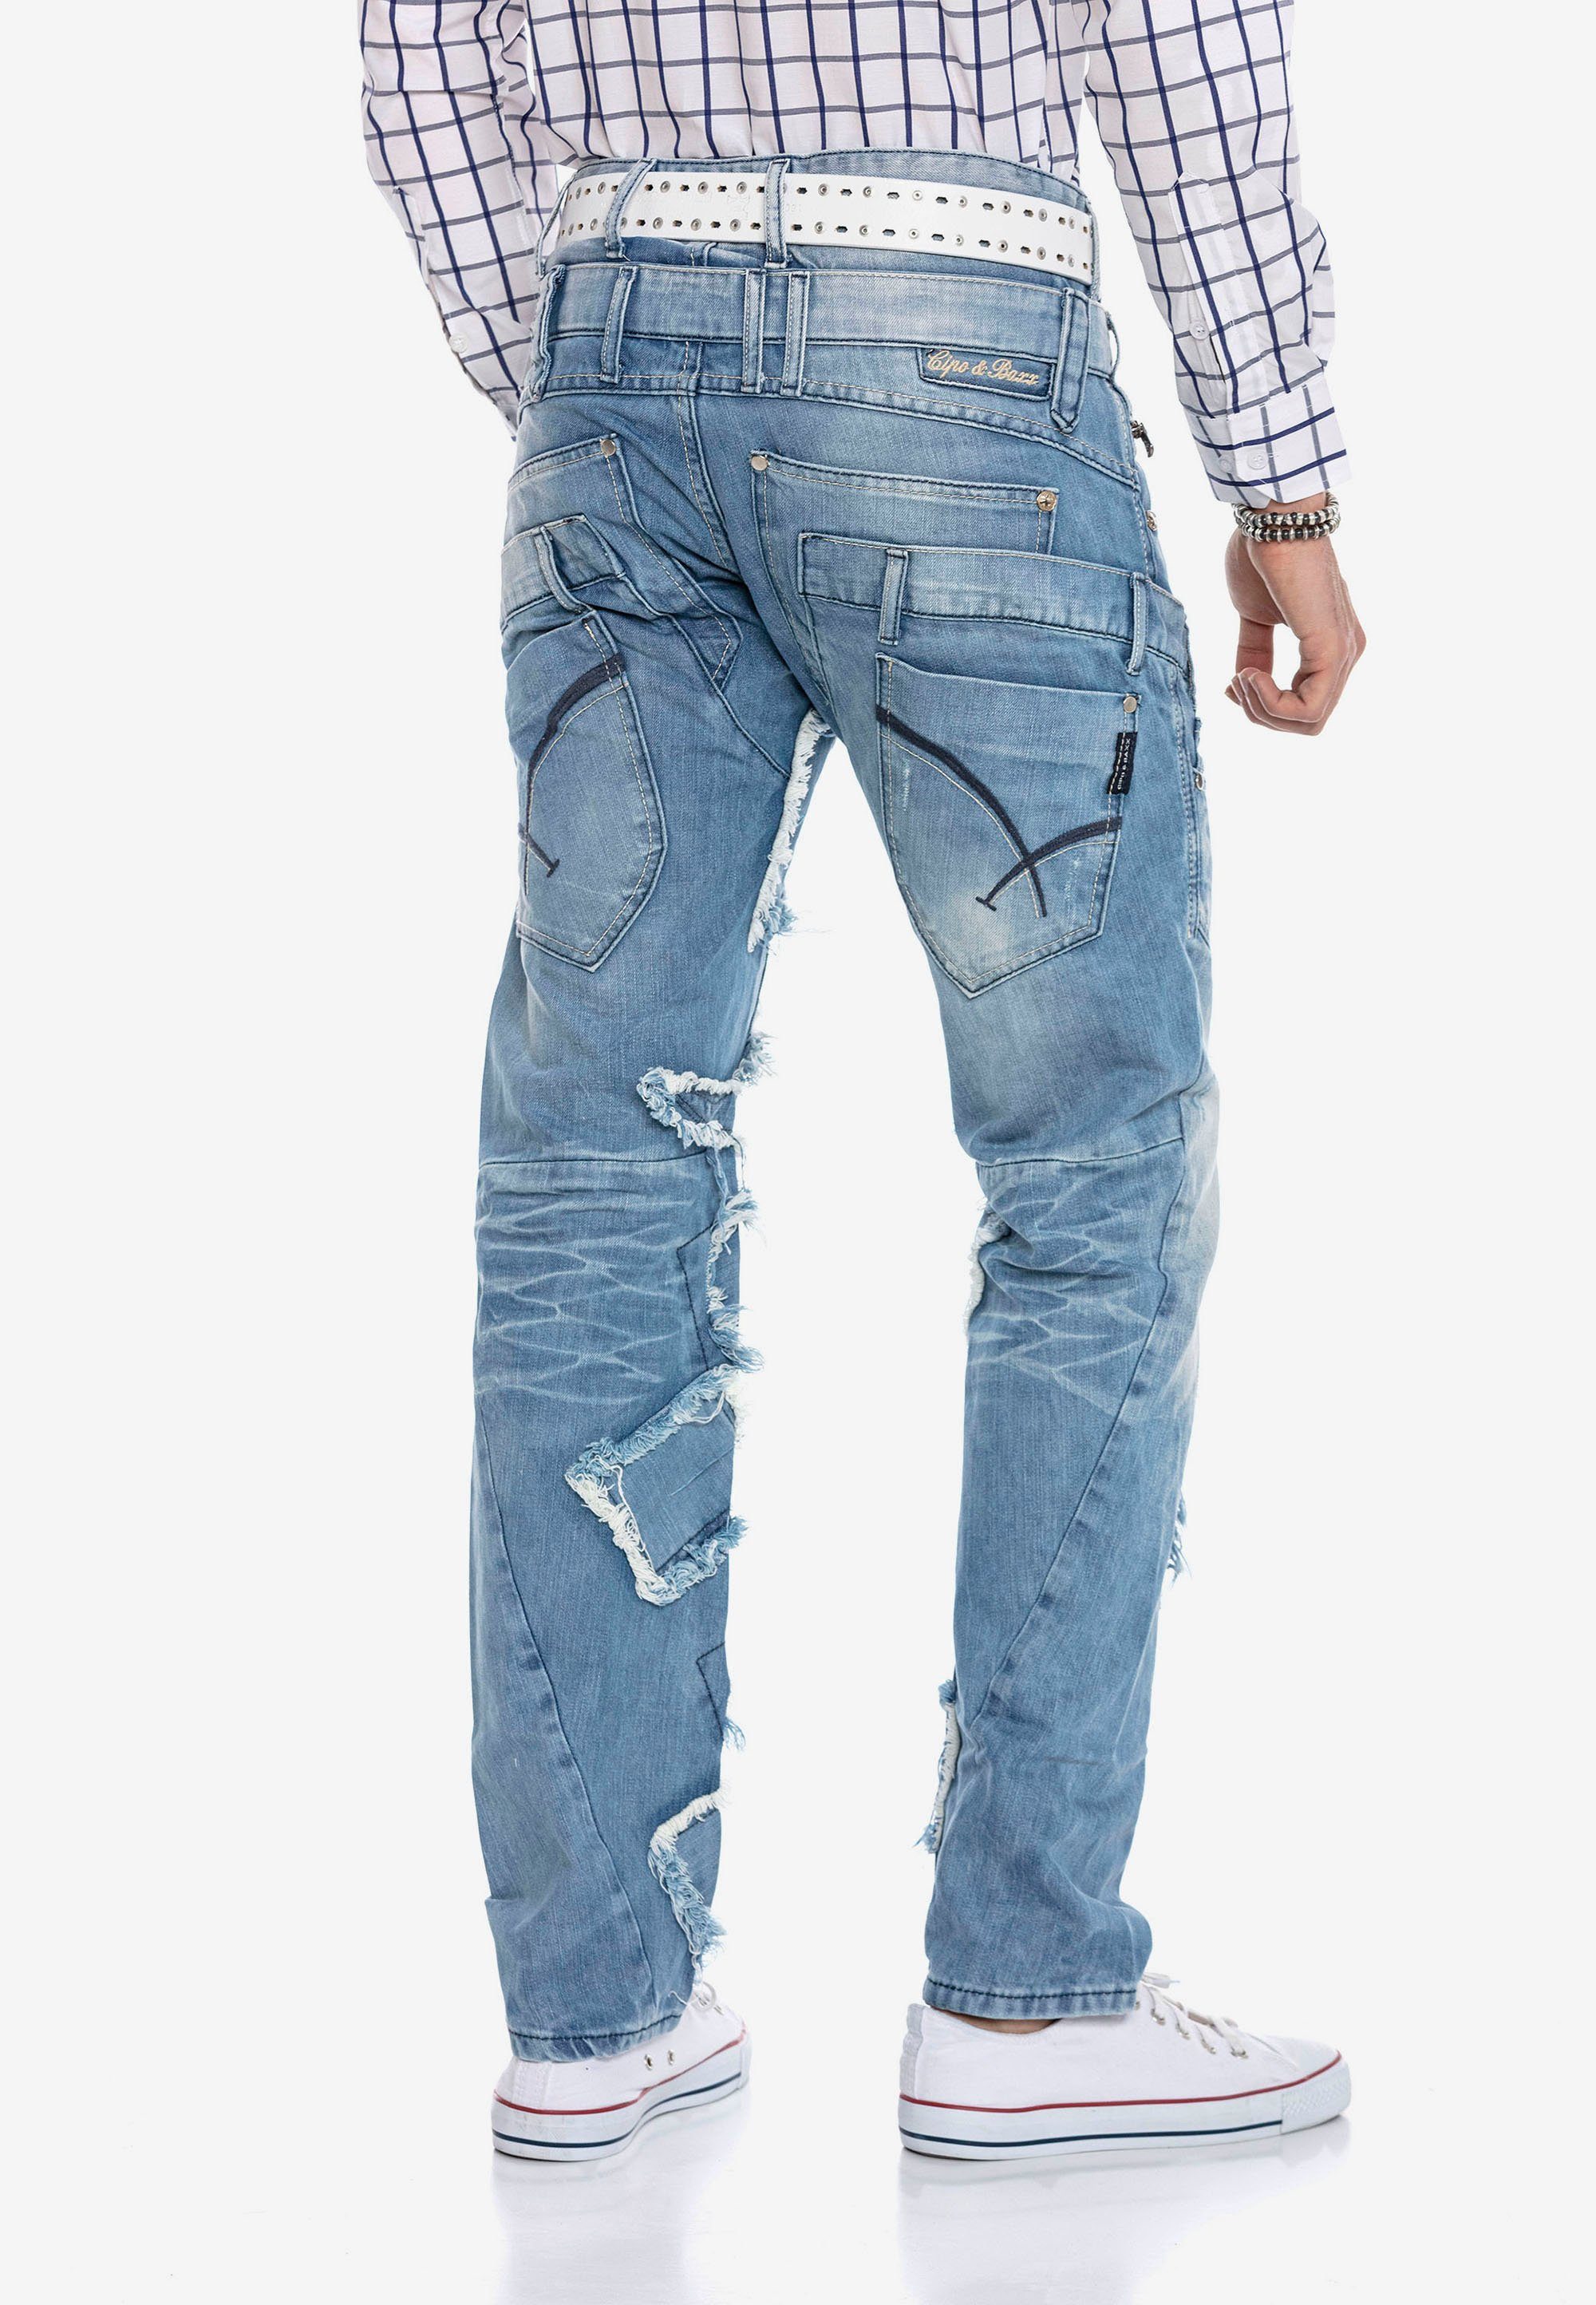 & Patchwork-Design Jeans Cipo im Baxx trendigen Bequeme